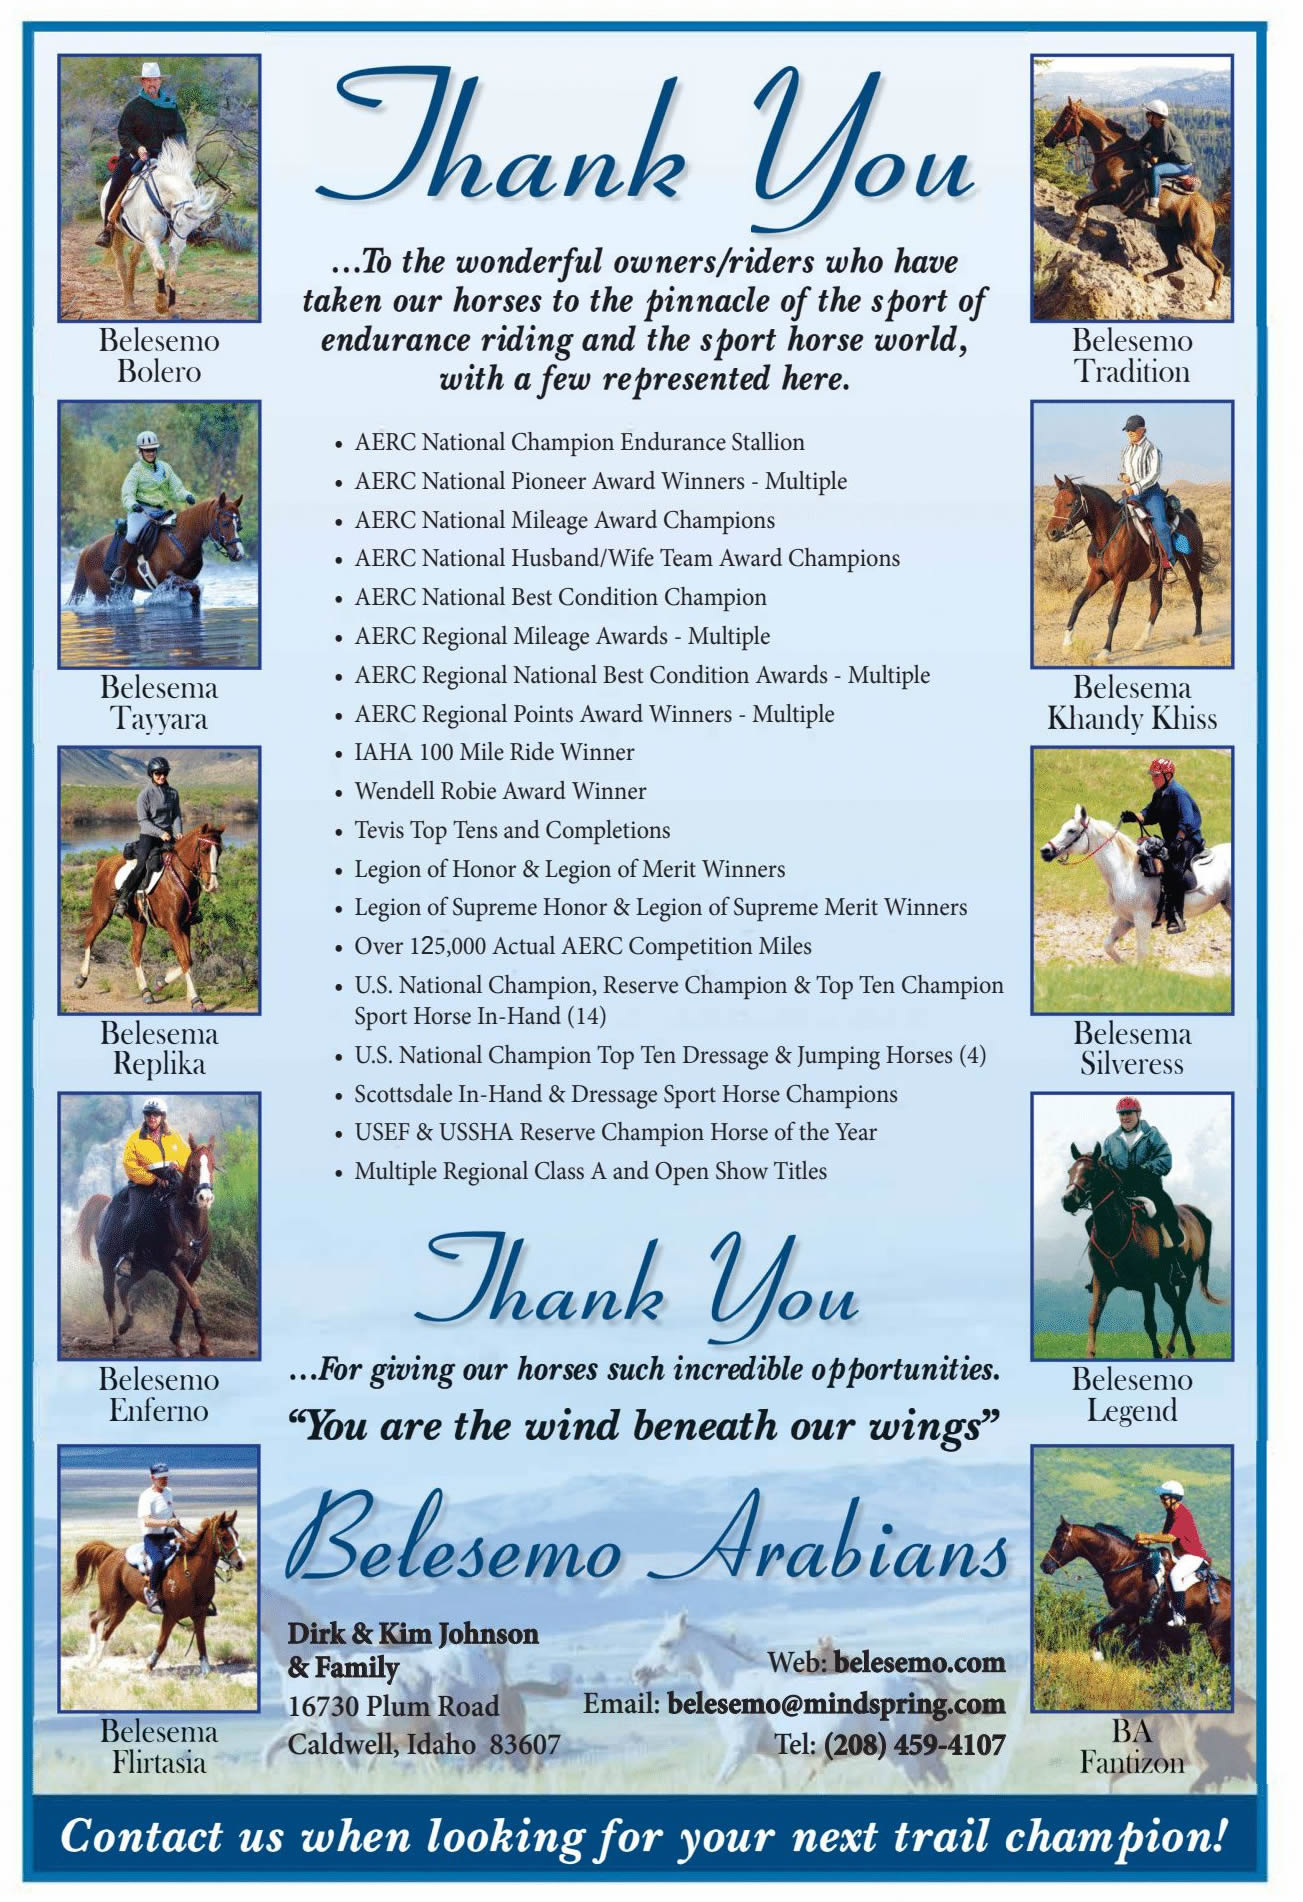 Belesemo Arabians Accomplishments over the years